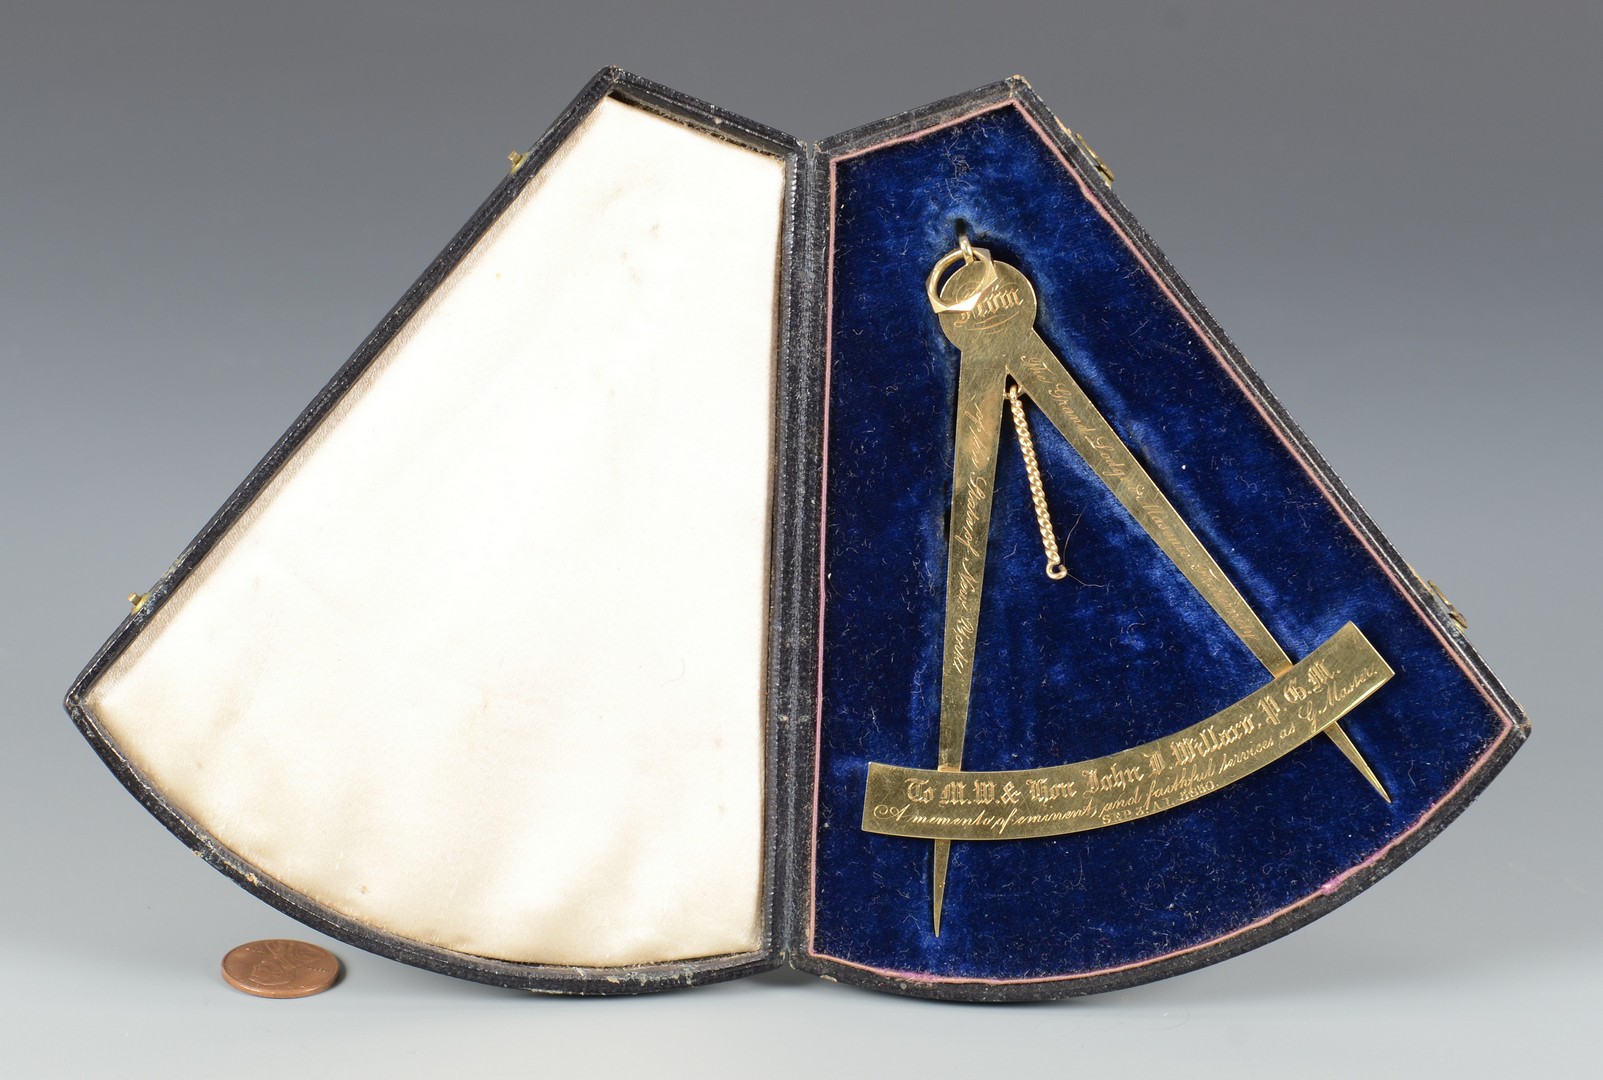 Lot 72: 14k Gold NY Masonic Medal, 1846